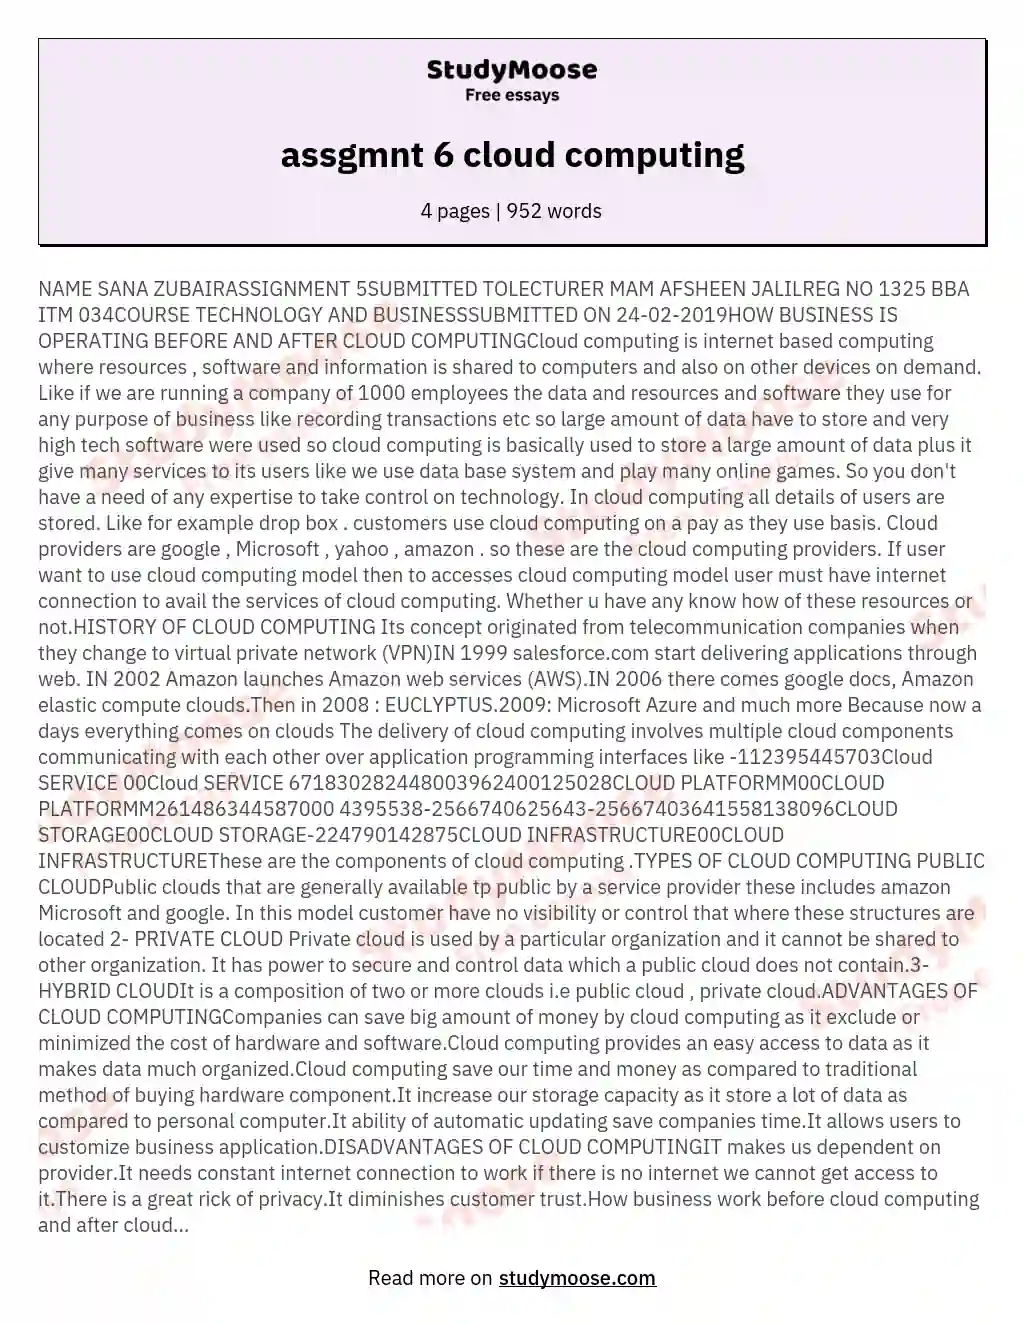 assgmnt 6 cloud computing essay